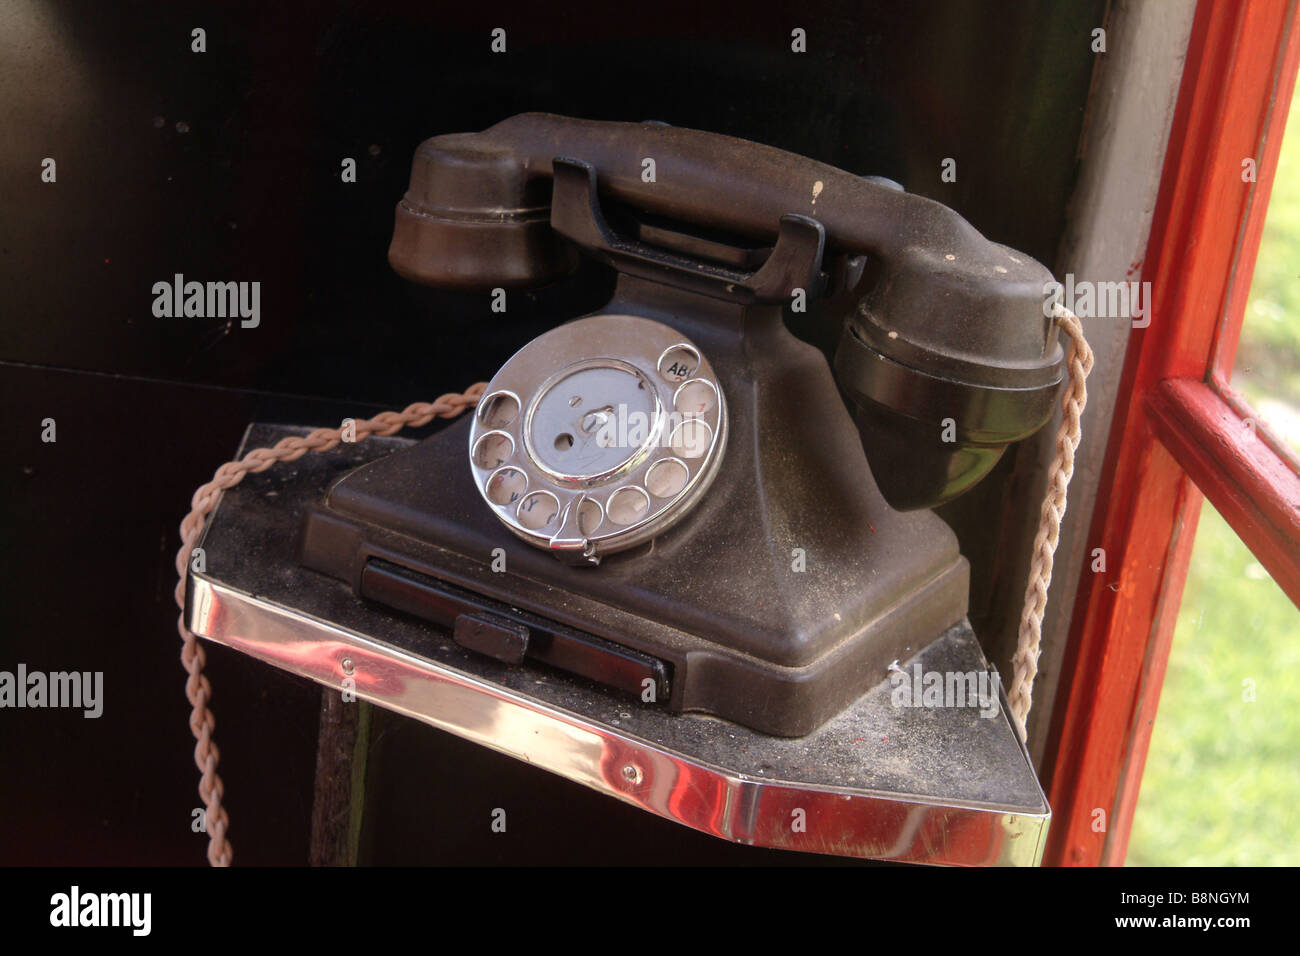 GPO originale 1/232 doigt bakélite téléphone ligne directe avec tiroir en 1940 une boîte de téléphone public Banque D'Images